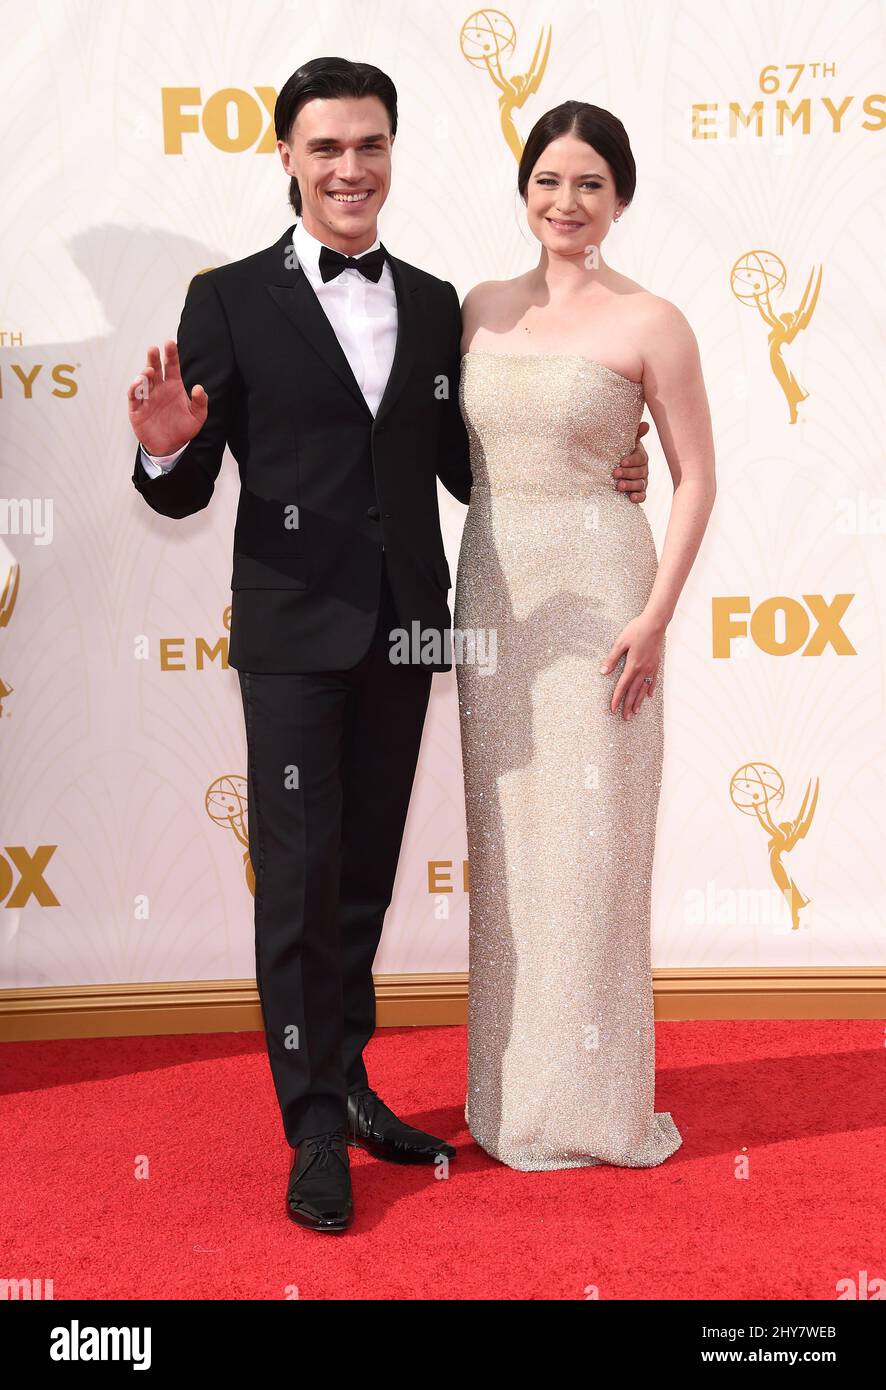 Finn Wittrock e Sarah Roberts arrivano al Primetime Emmy Awards 67th domenica 20 settembre 2015 al Microsoft Theatre di Los Angeles. Foto Stock